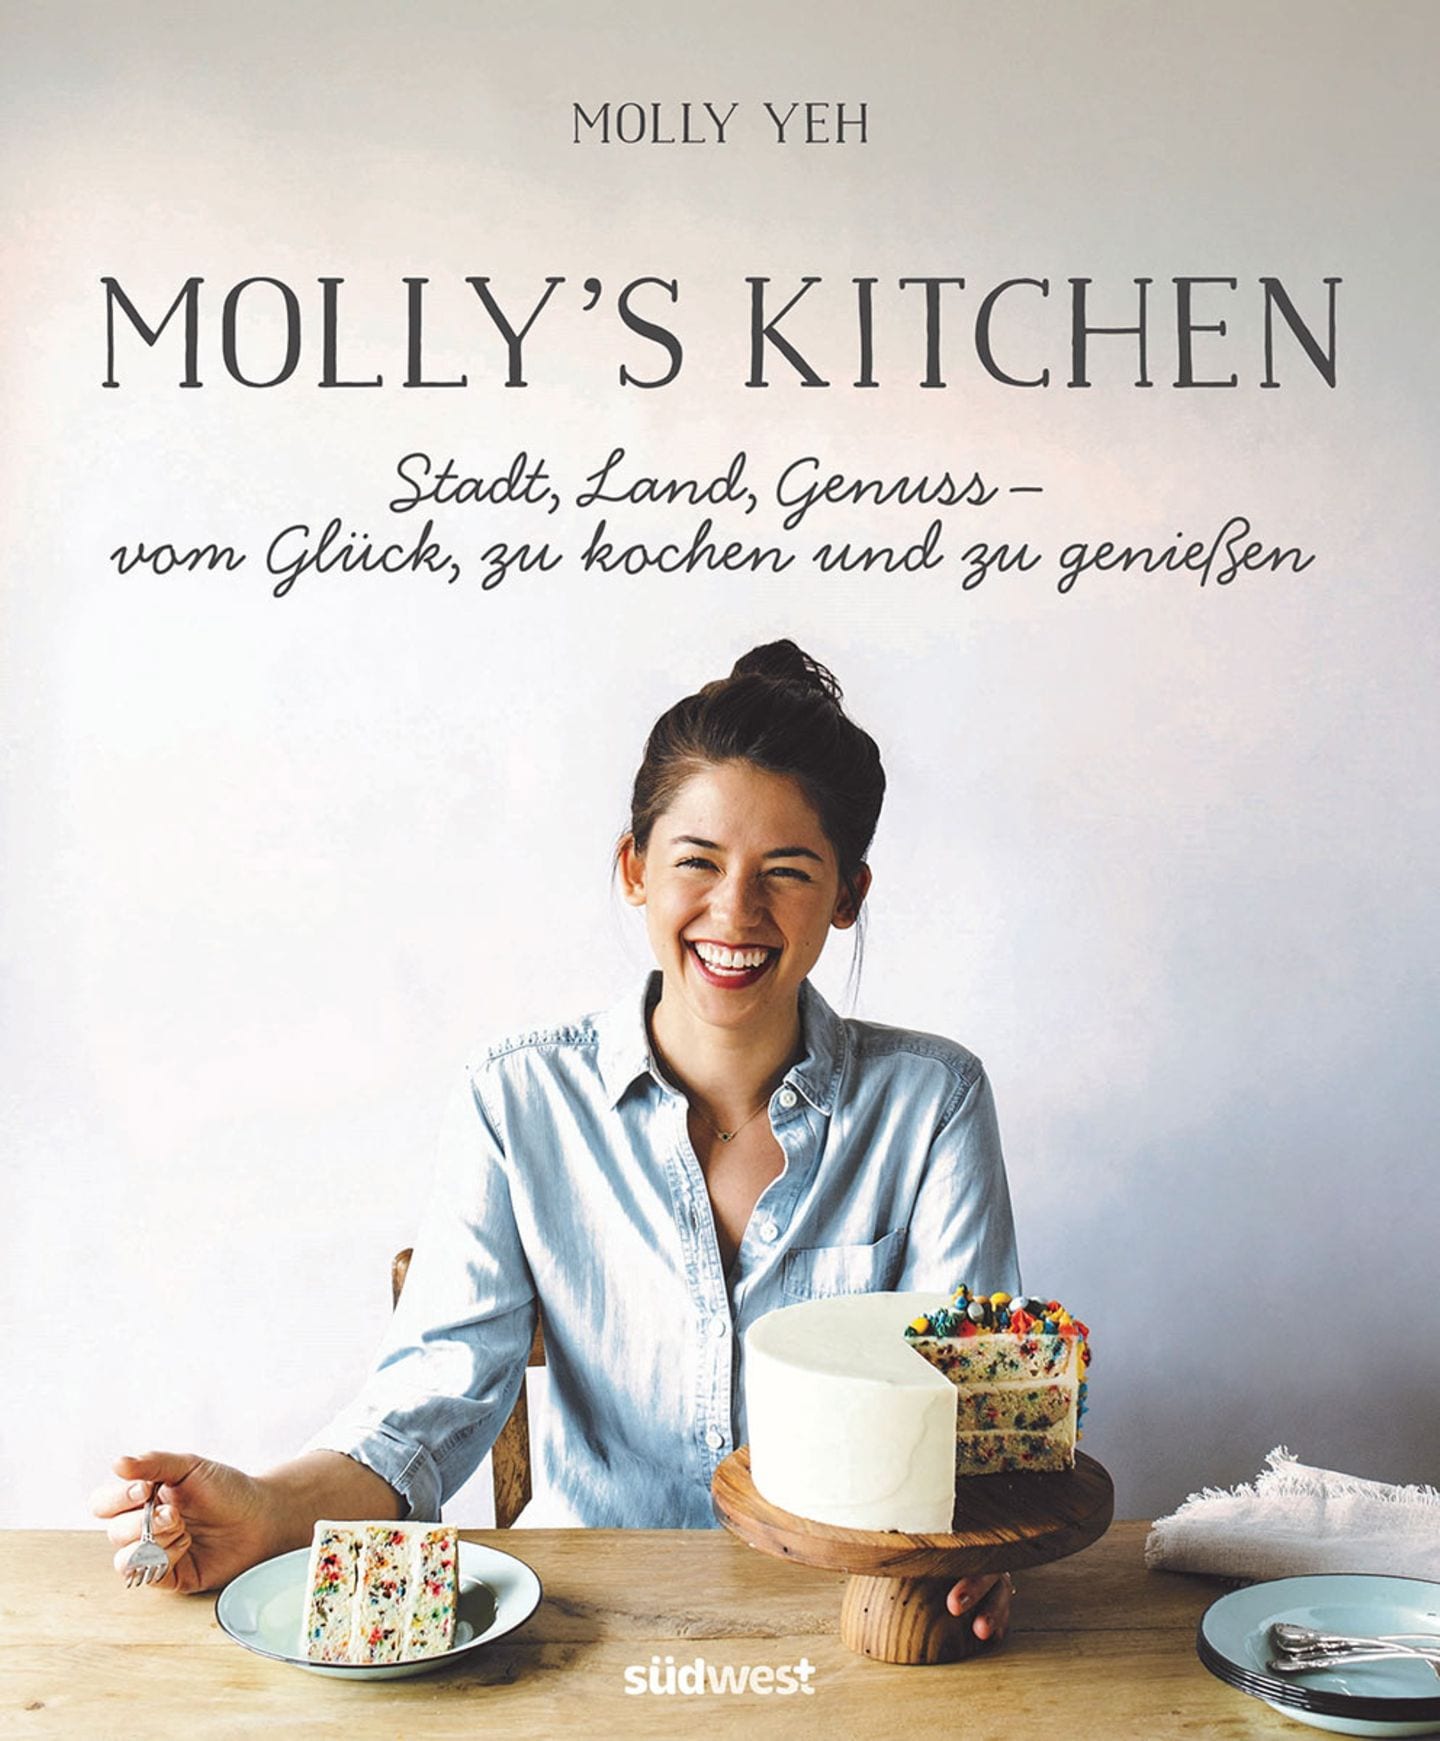 Kochbuch von Molly Yeh "Molly's Kitchen"